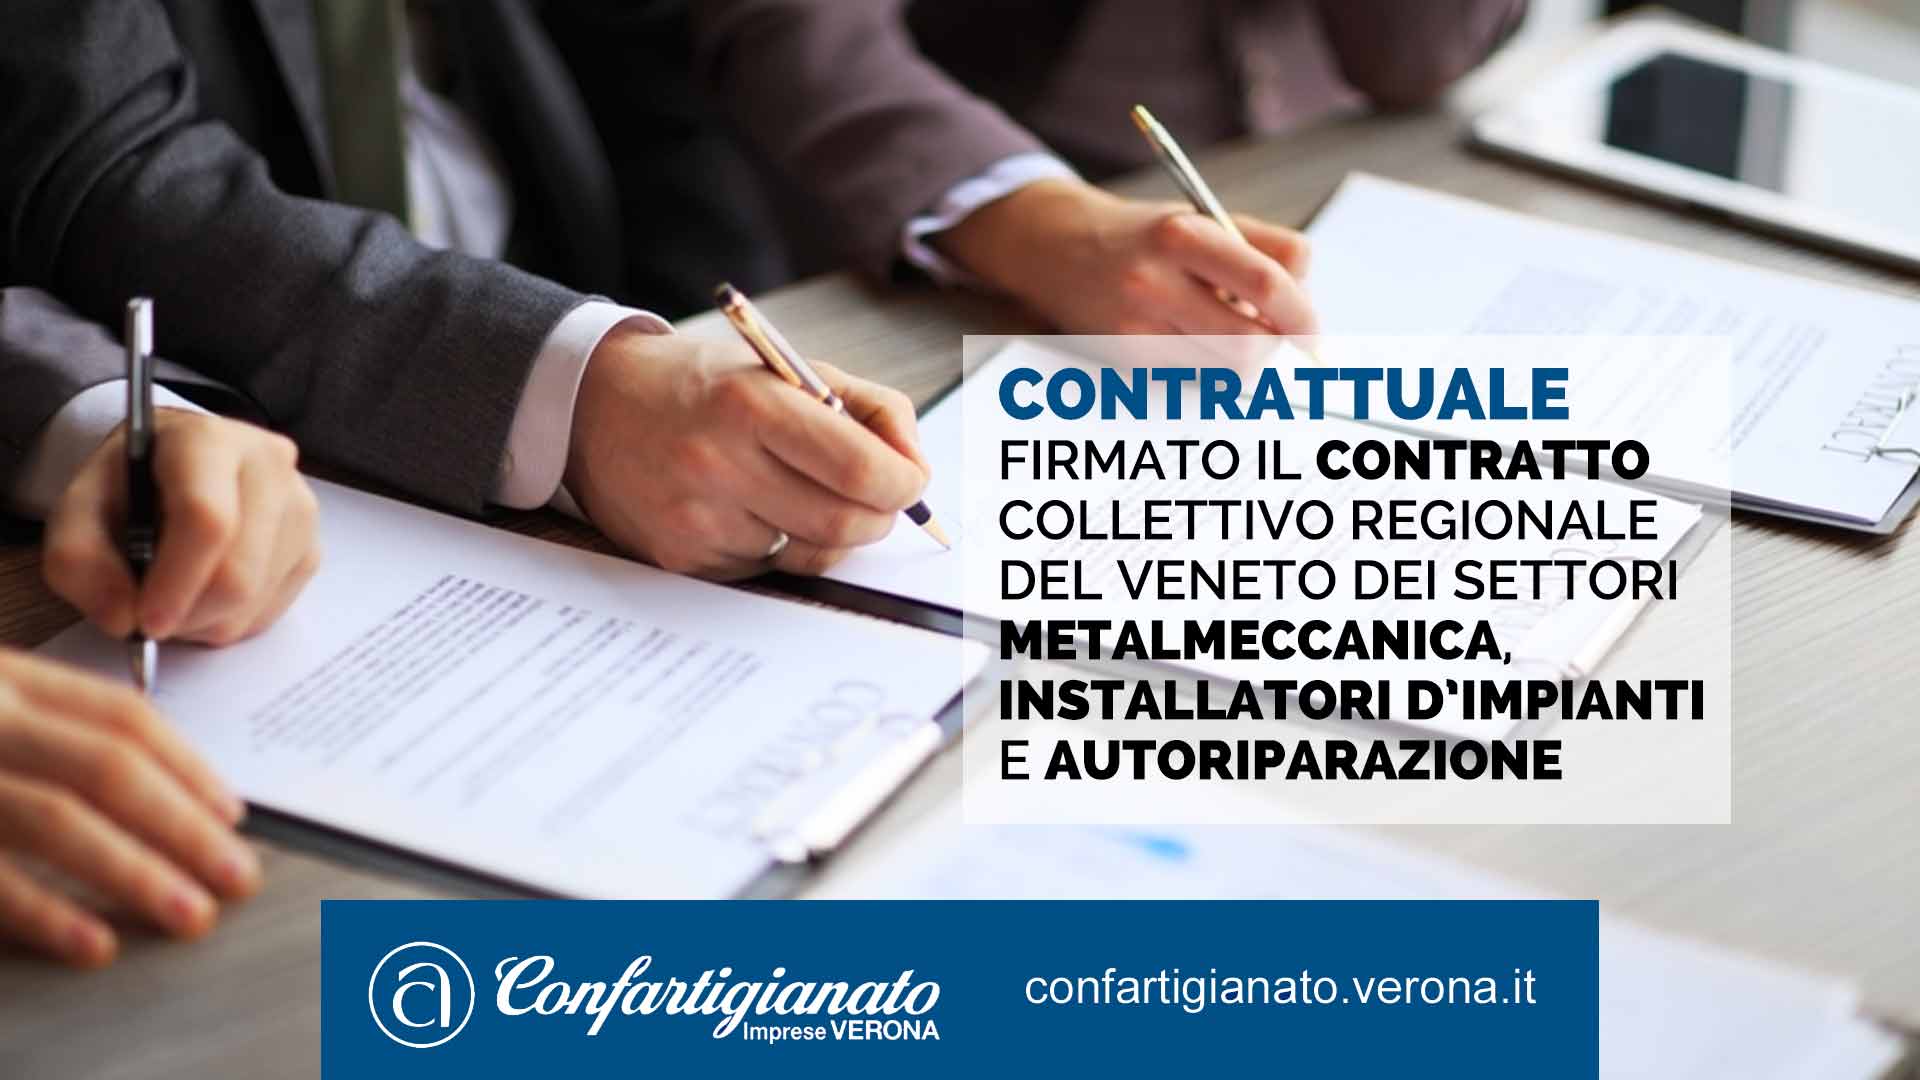 CONTRATTUALE – Firmato il Contratto Collettivo Regionale del Veneto dei settori Metalmeccanica, Installatori d’impianti e Autoriparazione